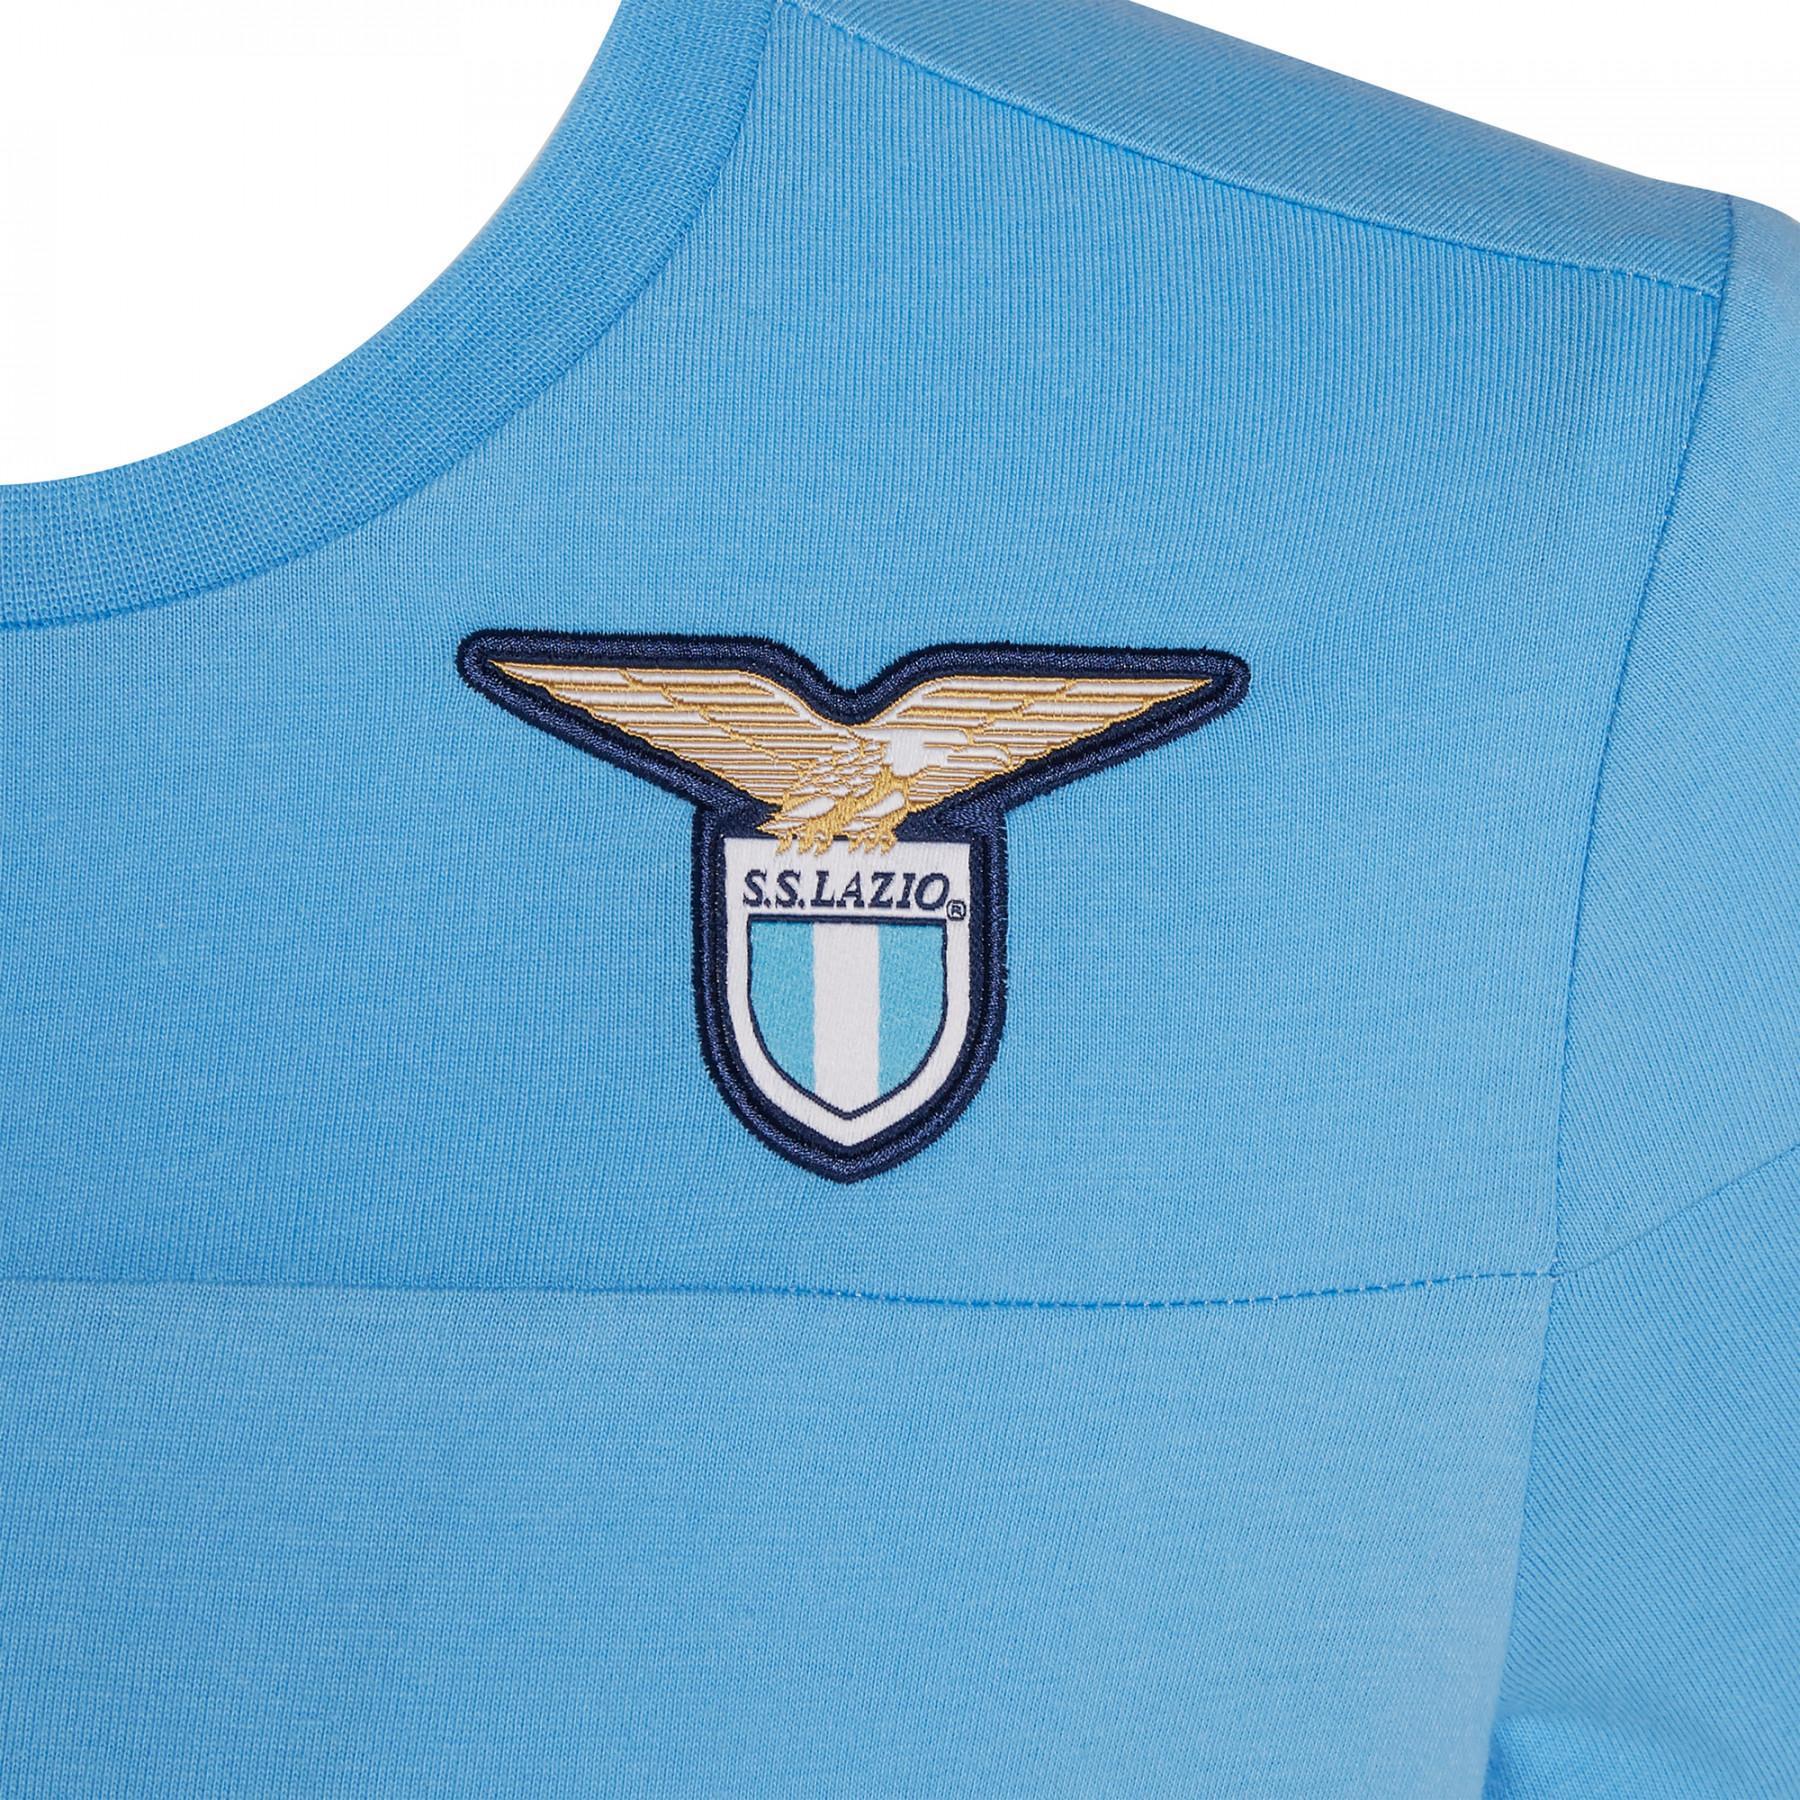 Kinder-T-Shirt Lazio Rome officiel